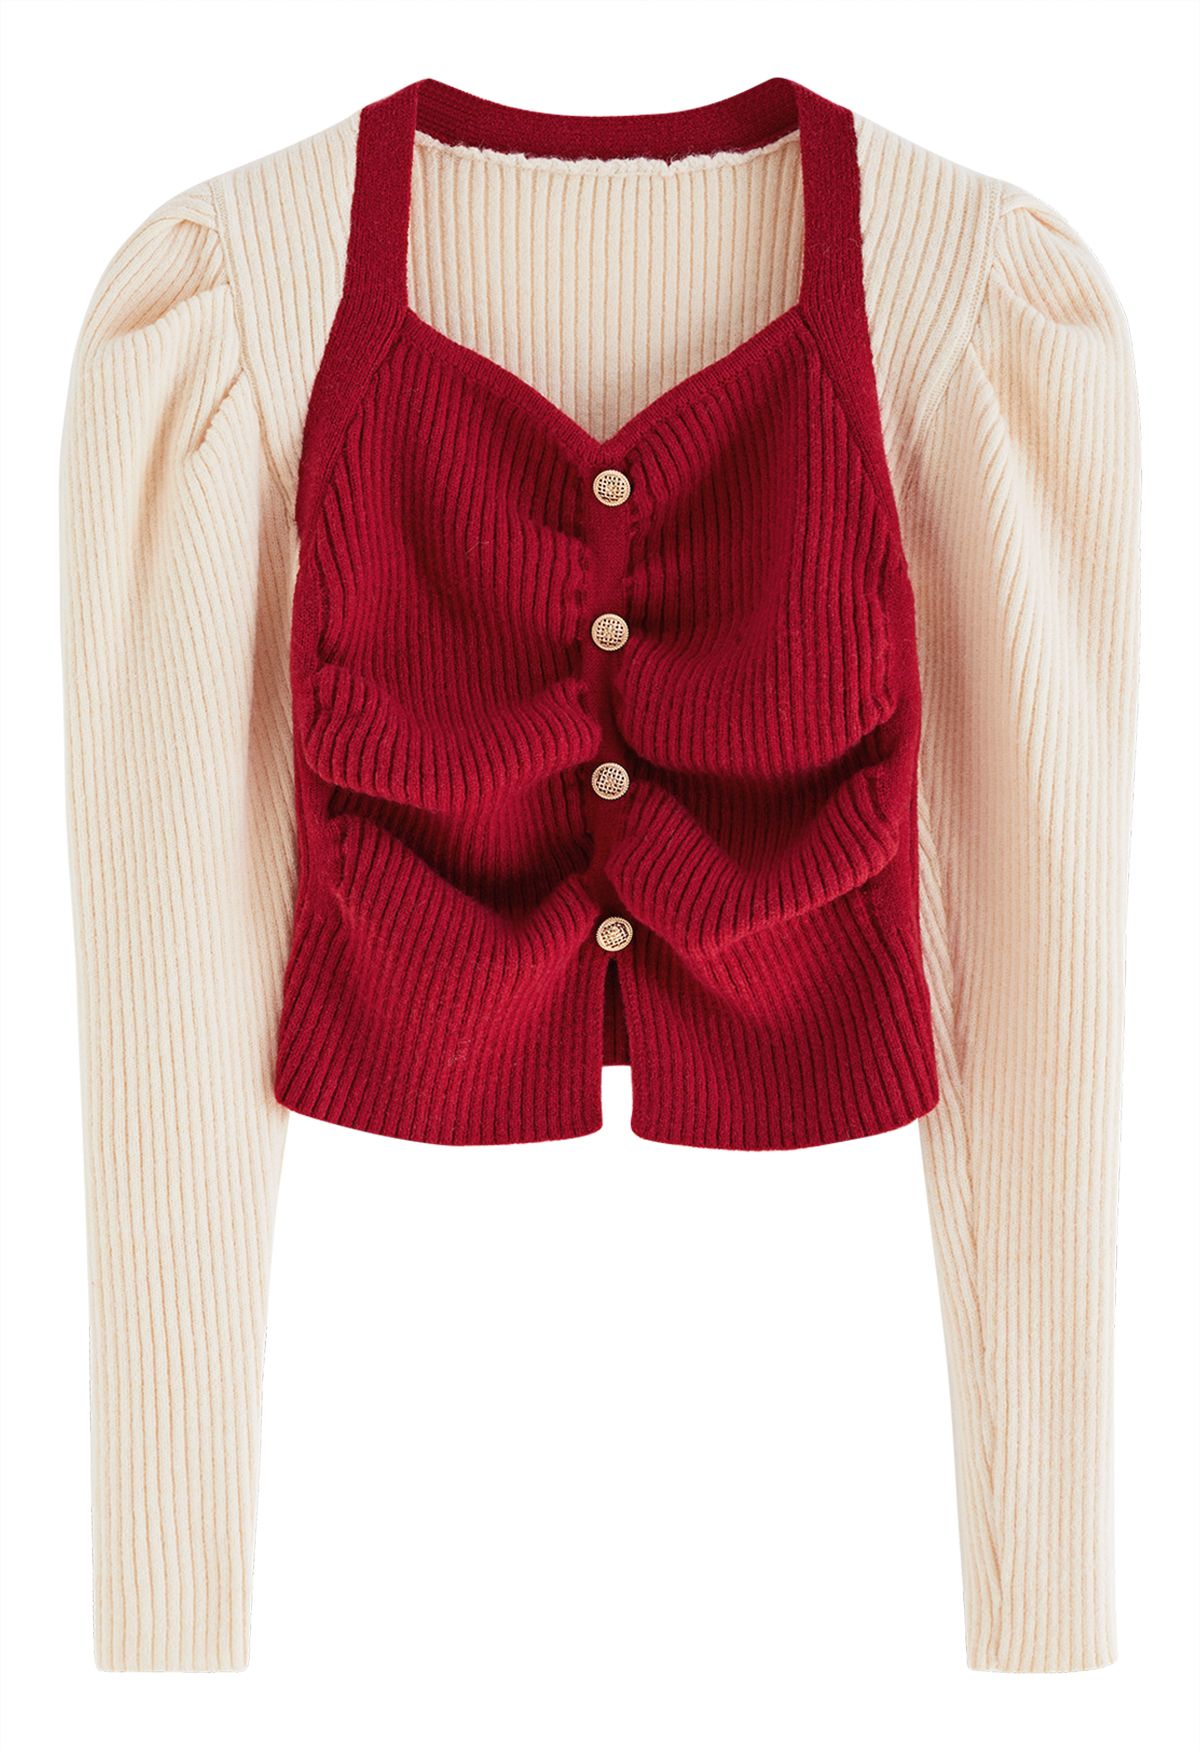 Suéter de punto con mangas abullonadas y botones en contraste en rojo